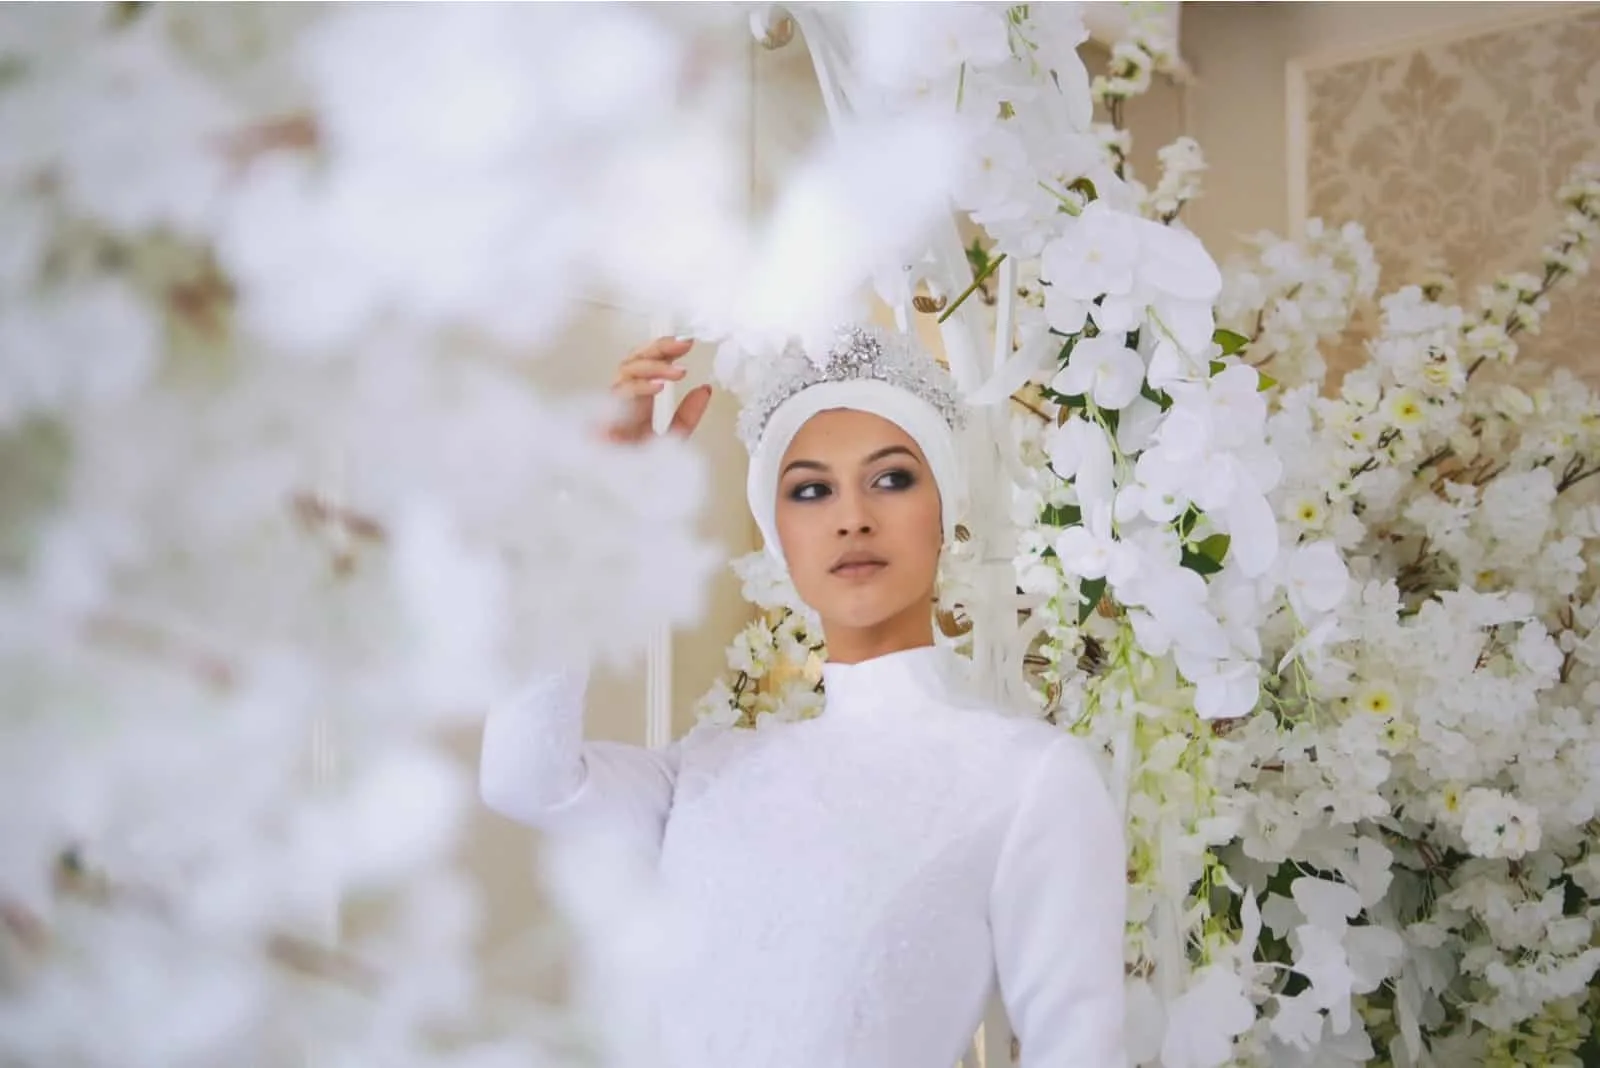 Braut mit Tiara im Hochzeitskleid in weißen Blumen